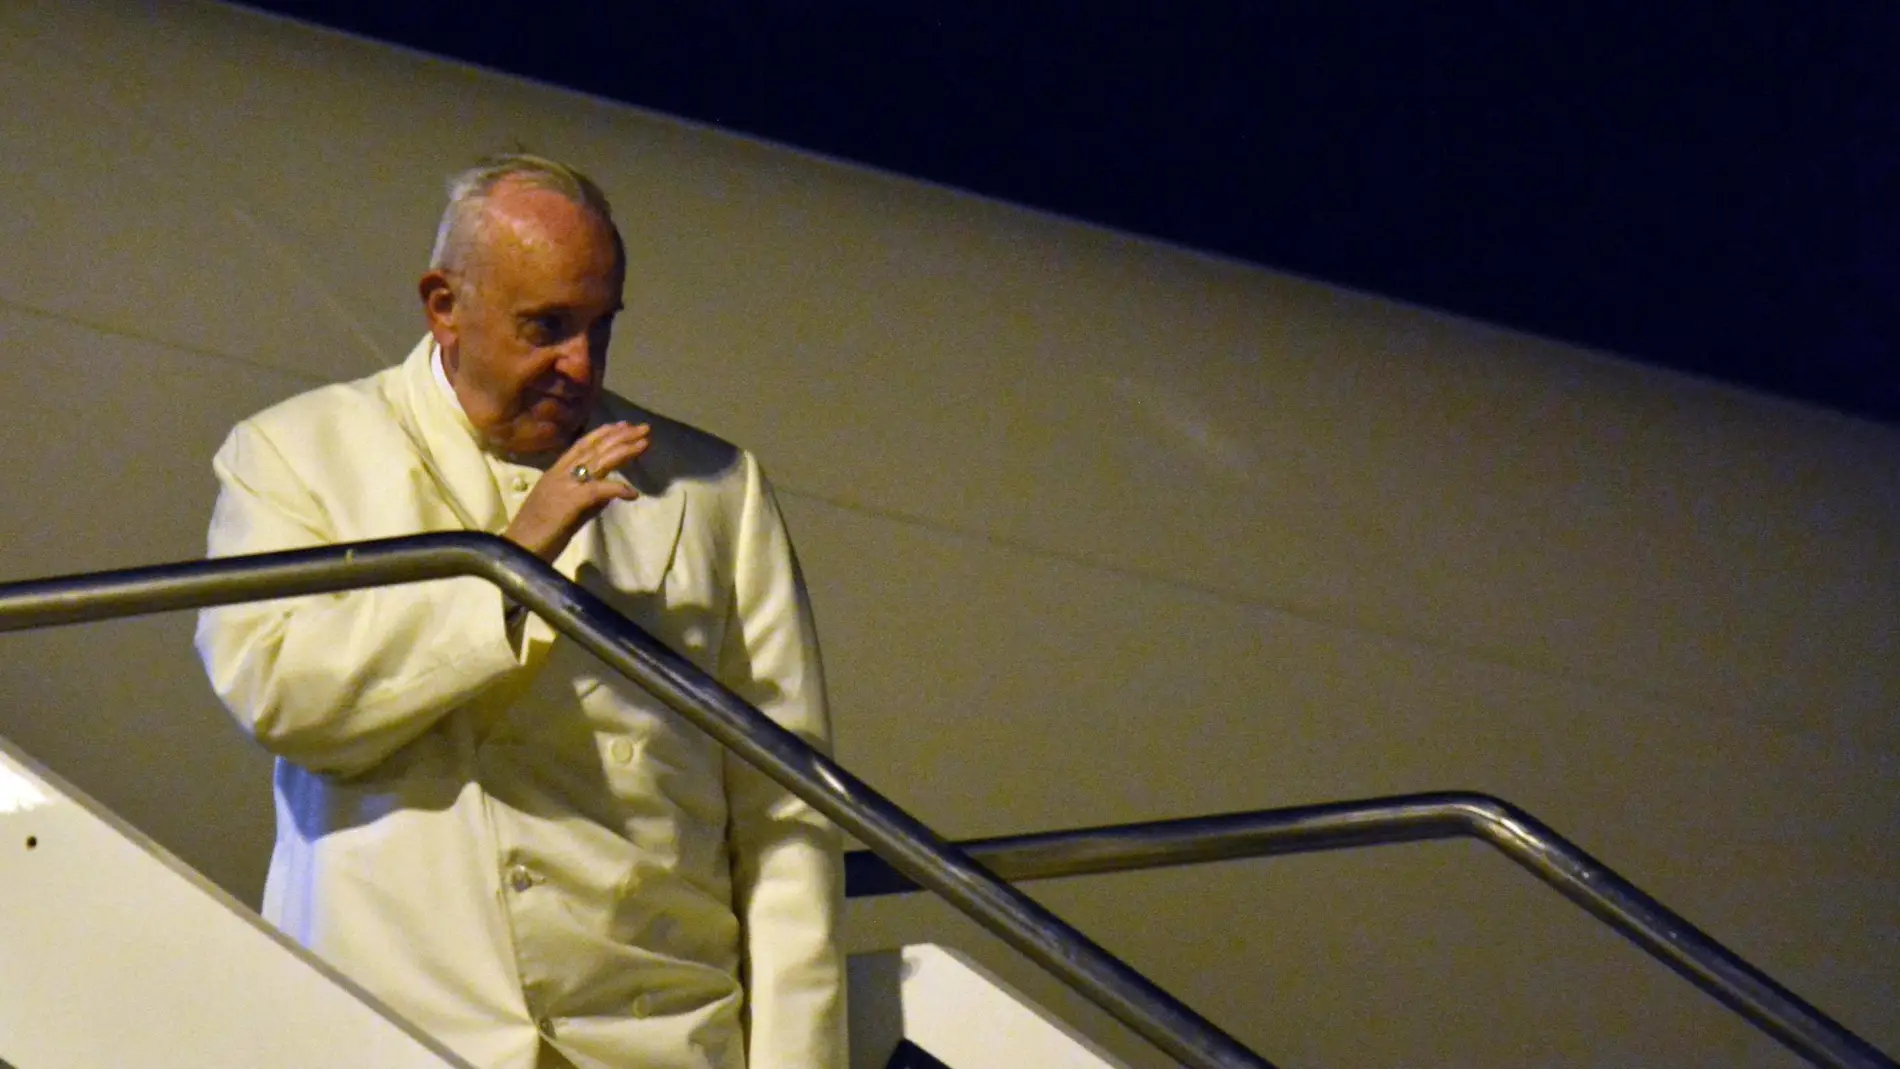 El papa Francisco emprendió hoy su viaje a Birmania y Bangladesh